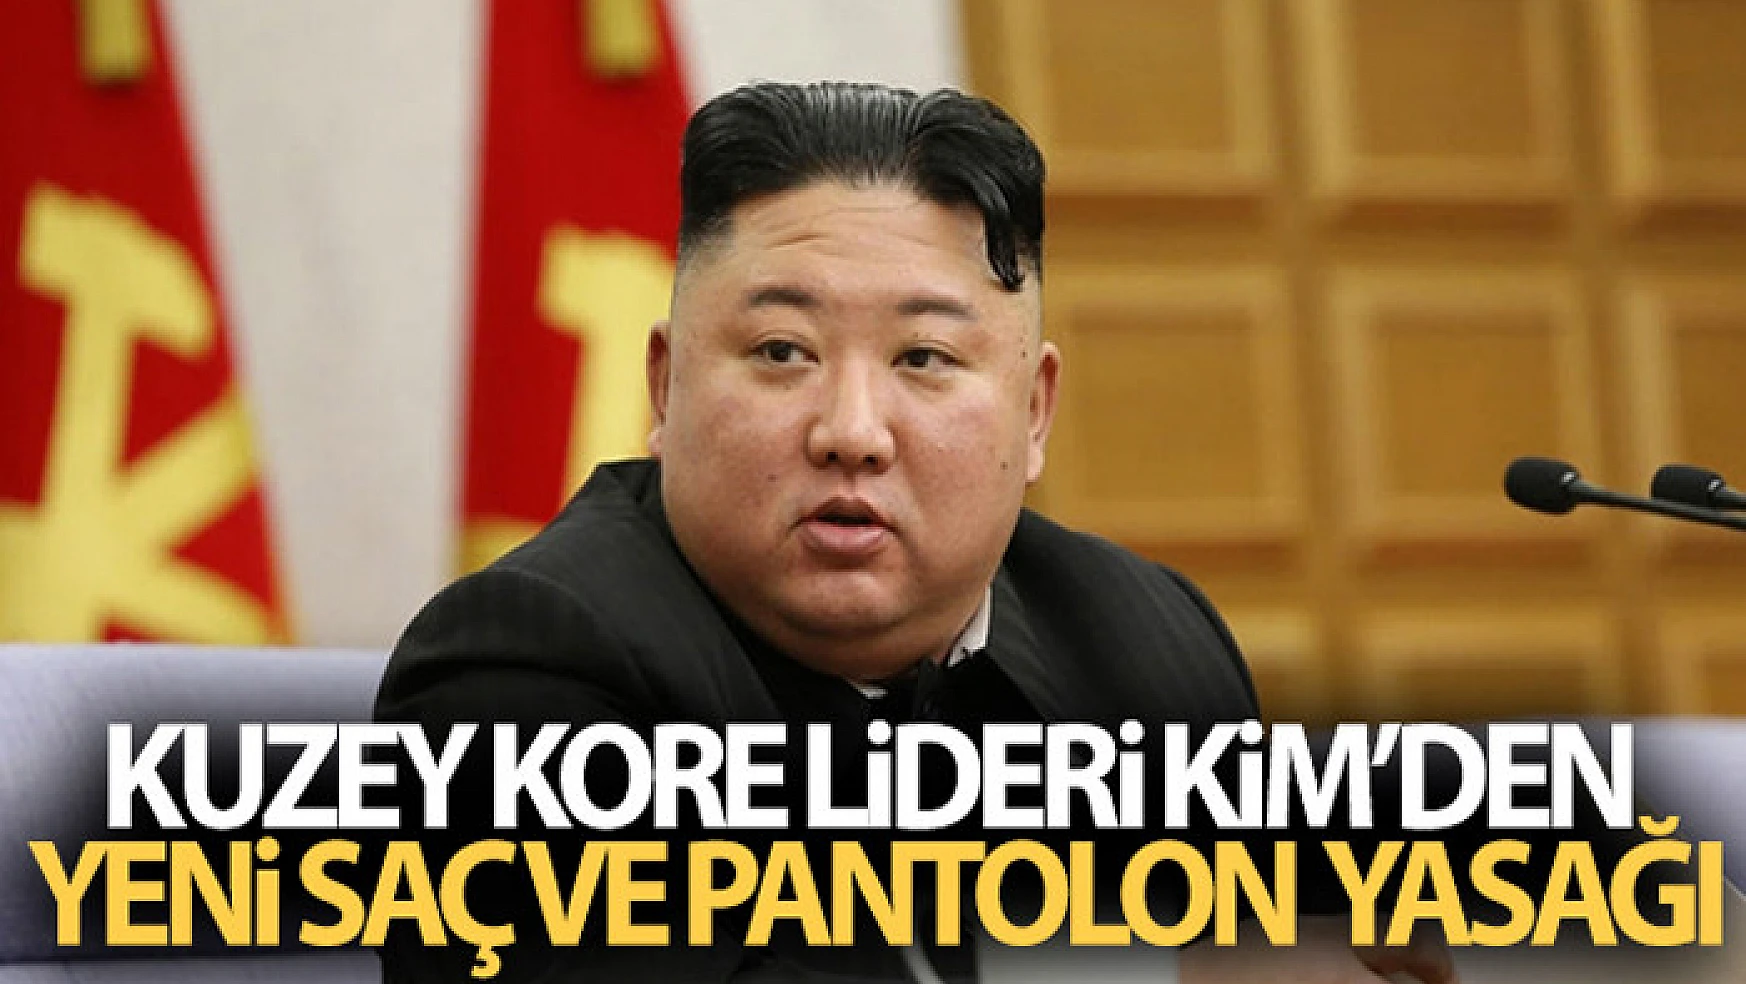 Kuzey Kore Lideri Kim'den yeni saç ve pantolon yasağı